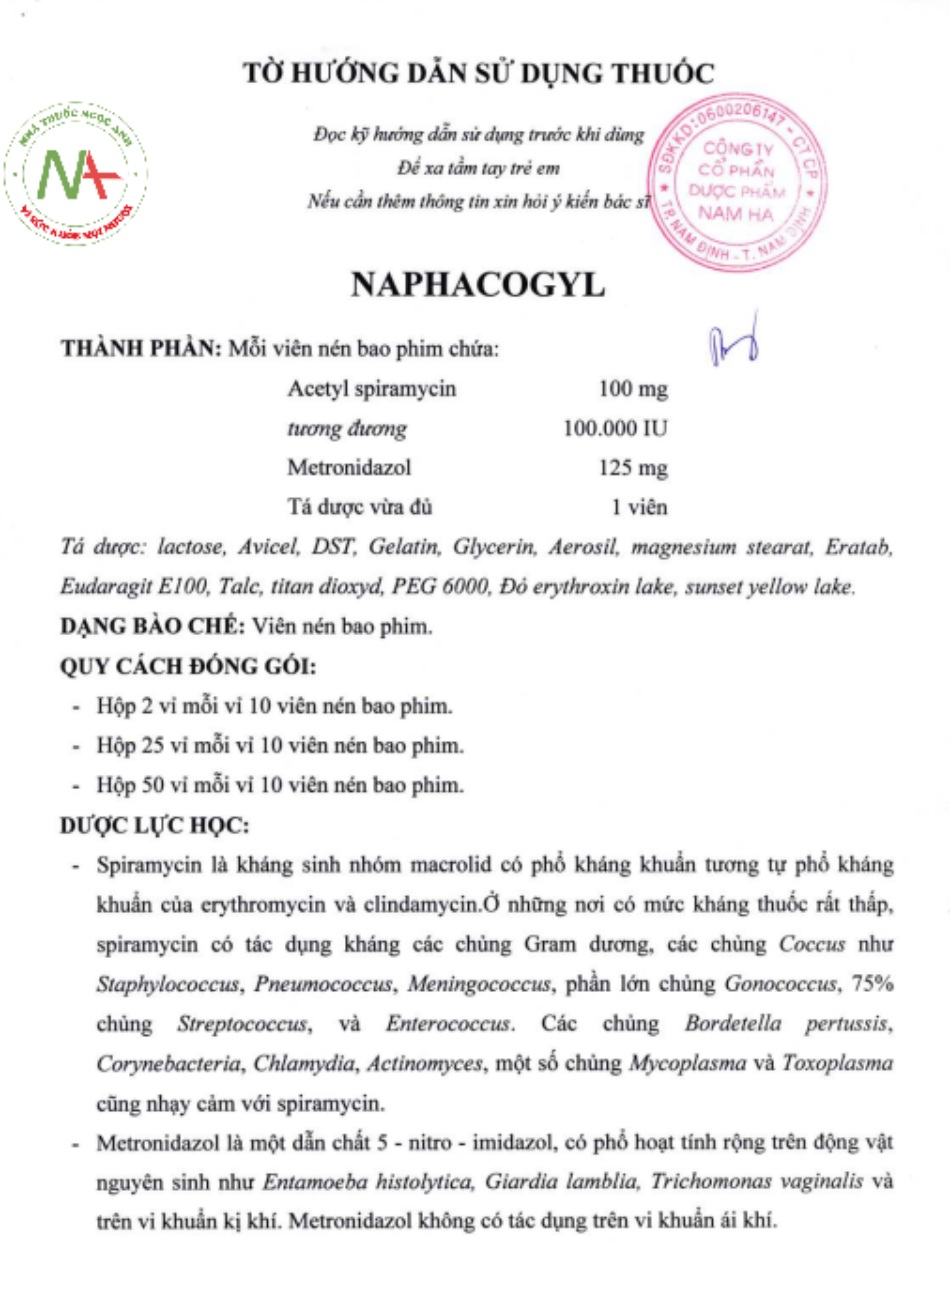 Tờ hướng dẫn sử dụng Naphacogyl 